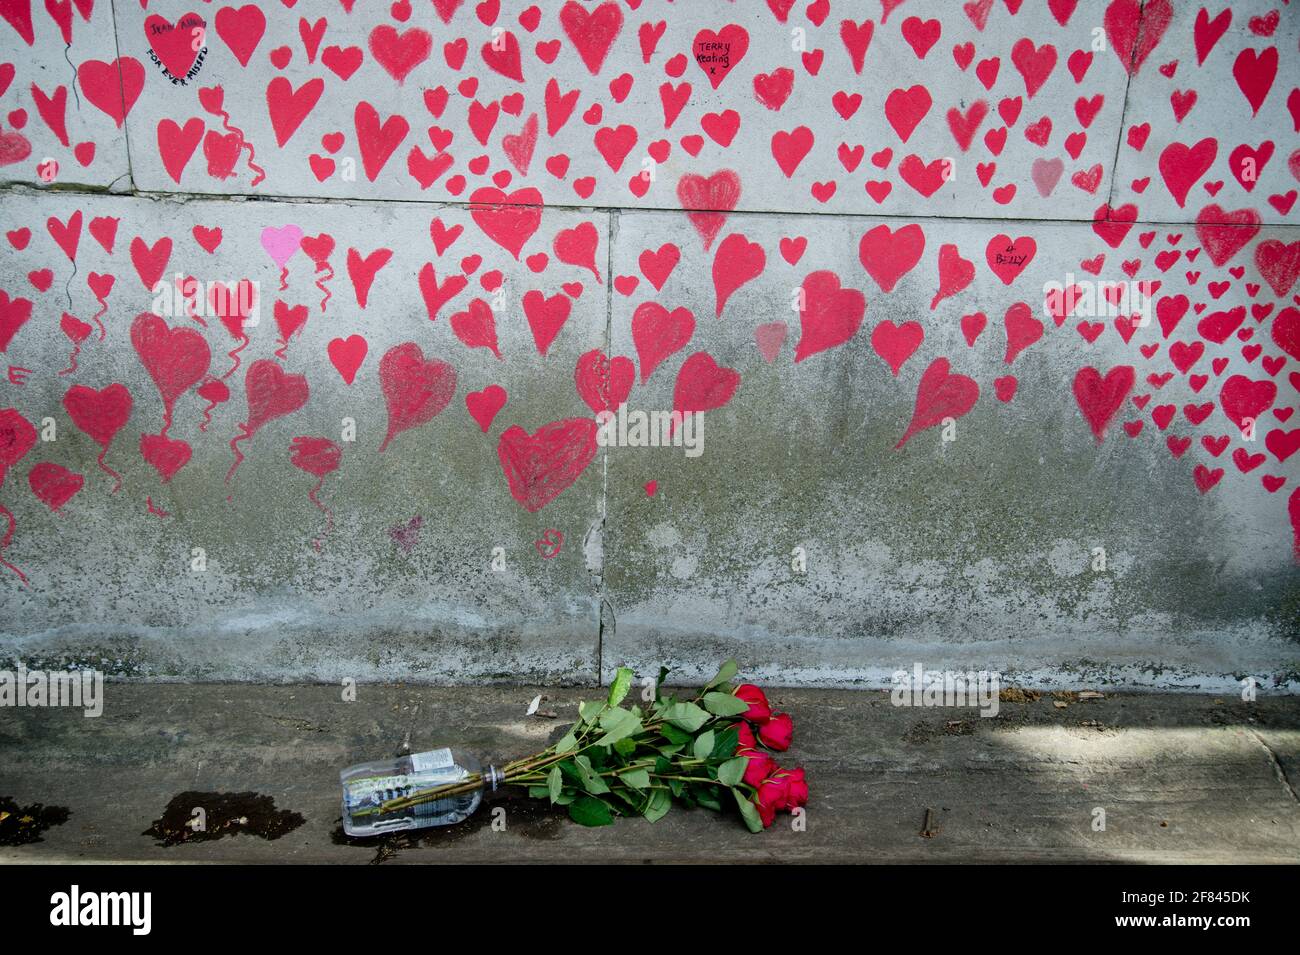 Southbank, London, England, Großbritannien. National Covid Memorial Wall. Rote Herzen, um diejenigen zu verharmlosen, die an Covid gestorben sind. Stockfoto